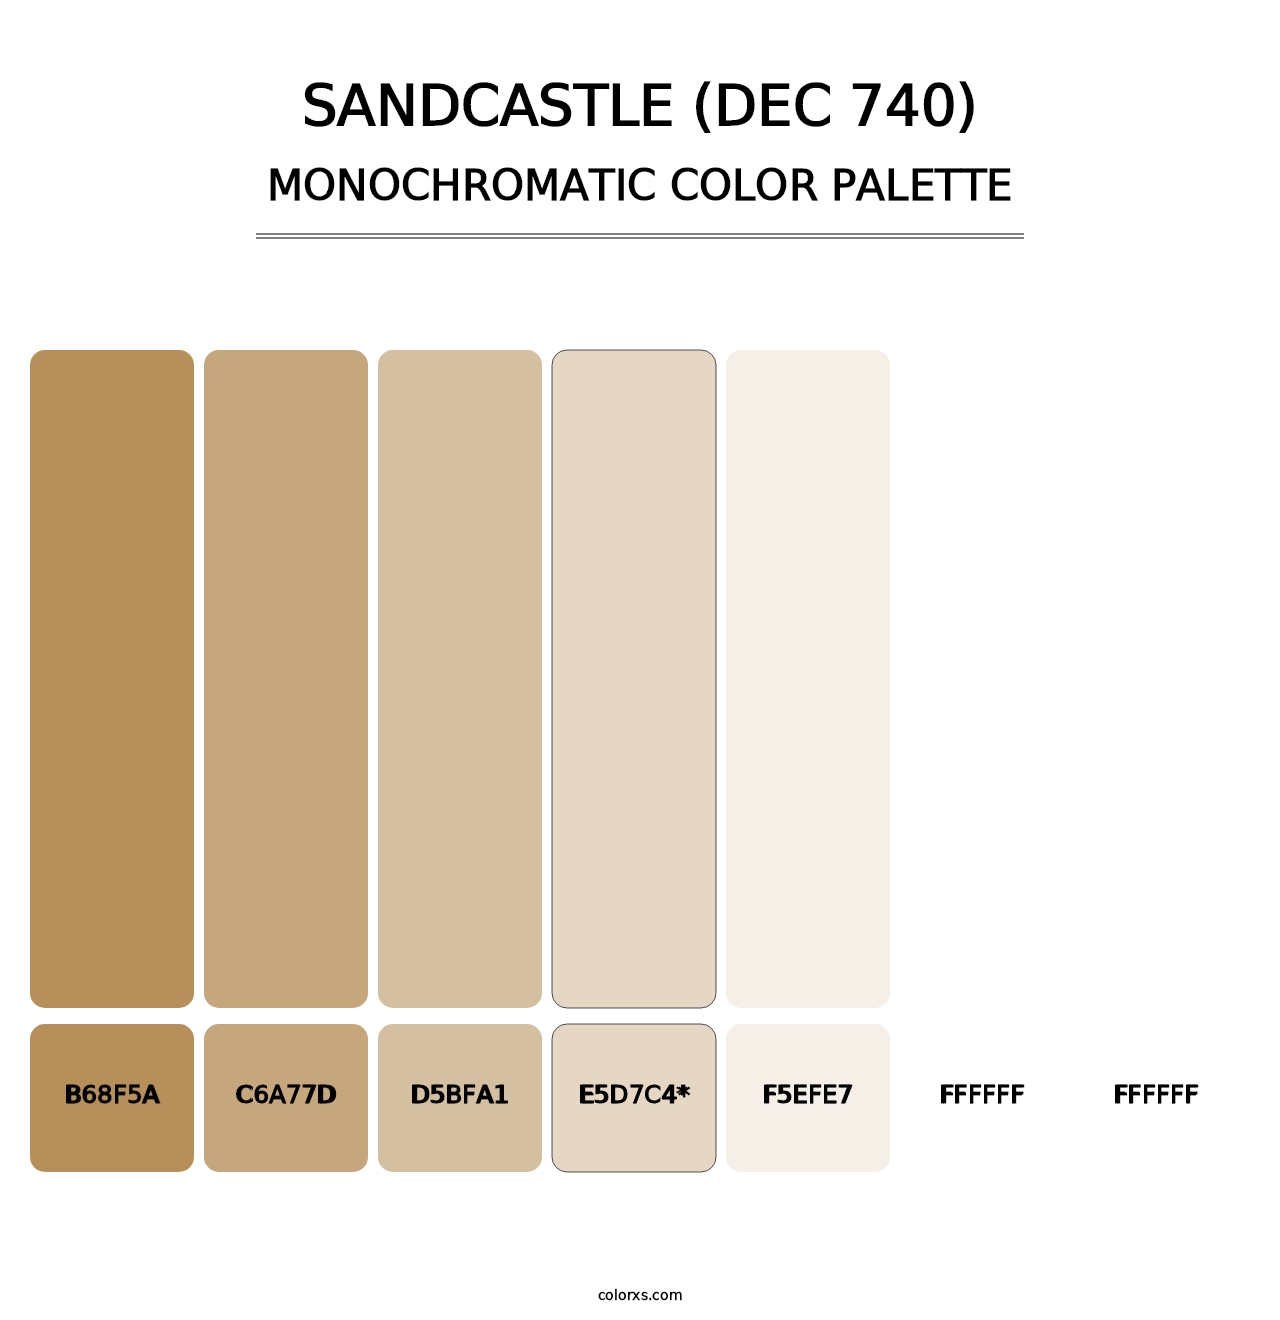 Sandcastle (DEC 740) - Monochromatic Color Palette